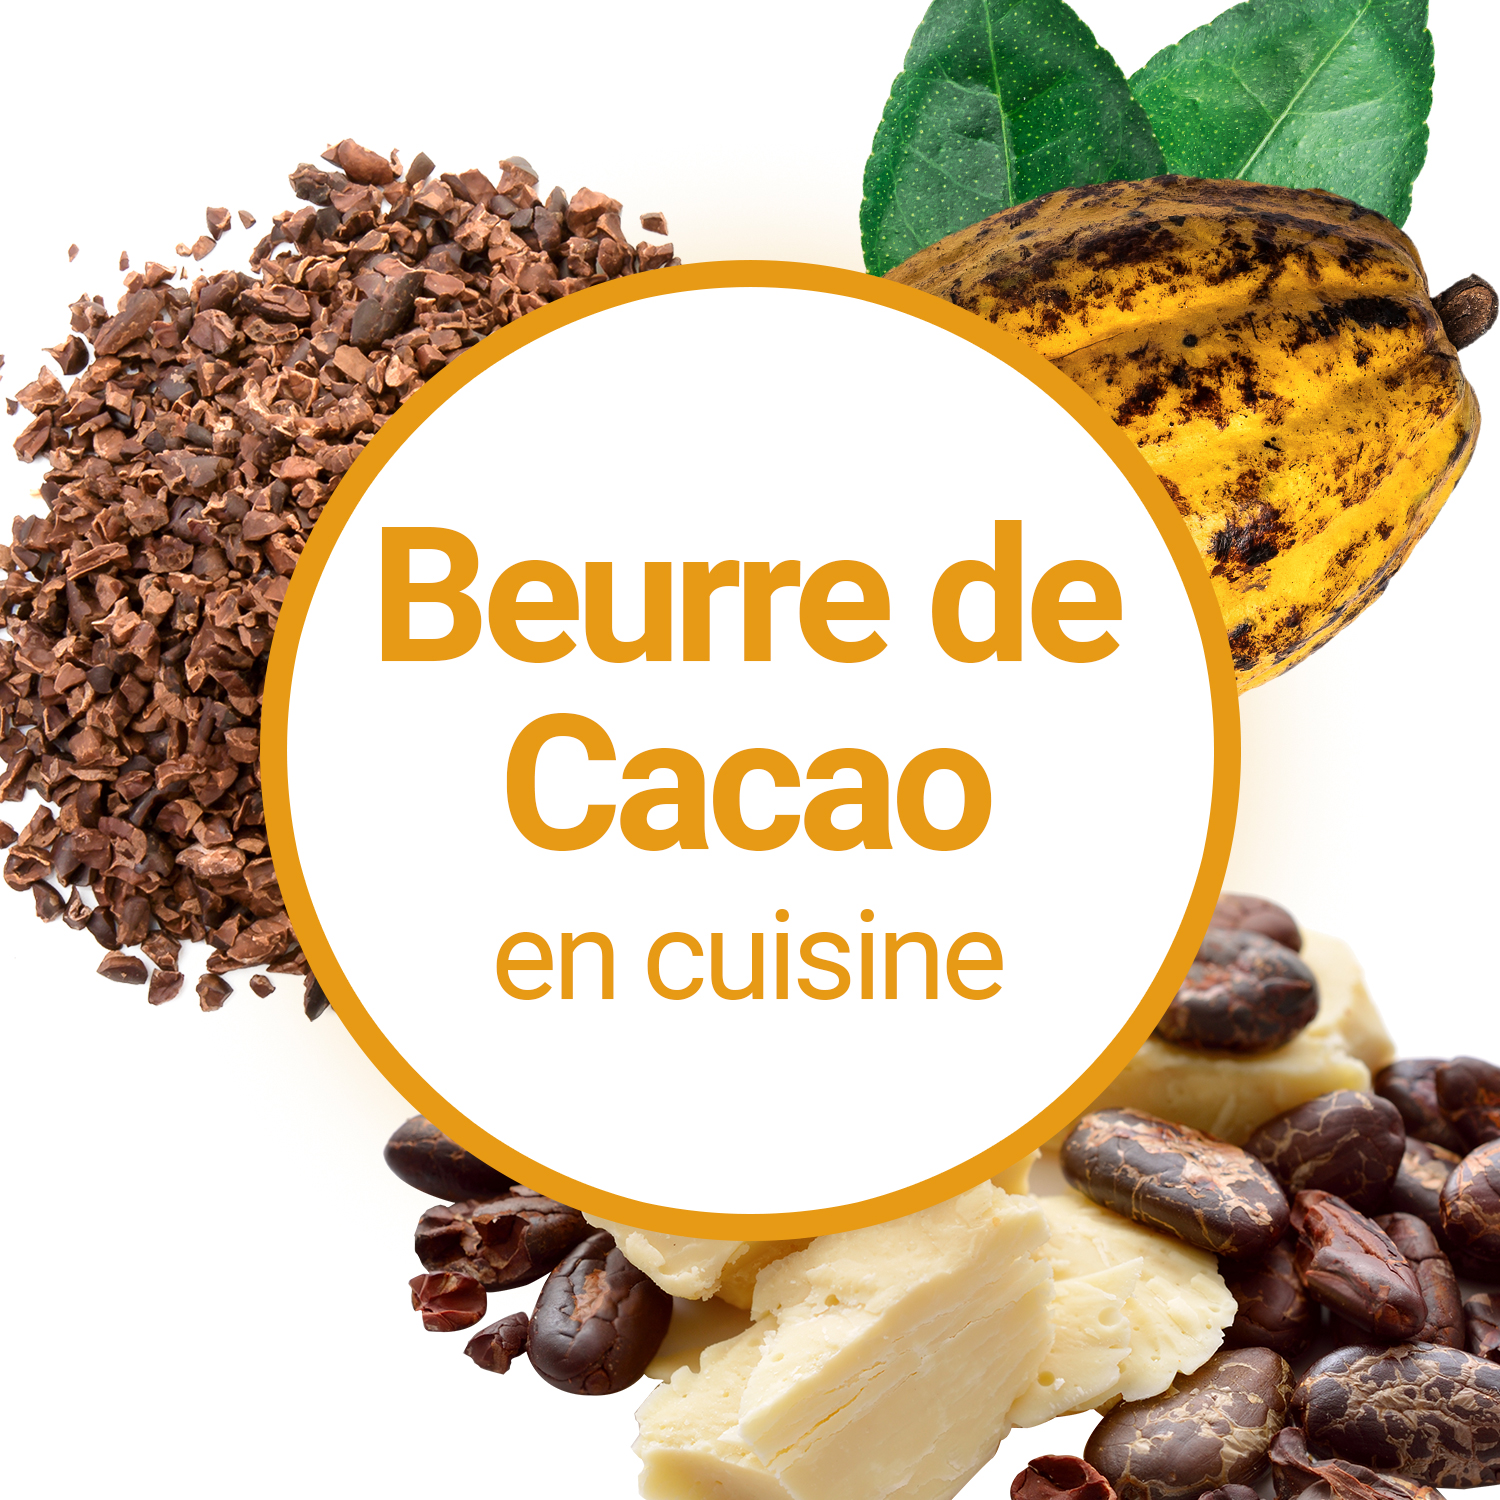 Quelle Est La Composition Du Beurre De Cacao ?